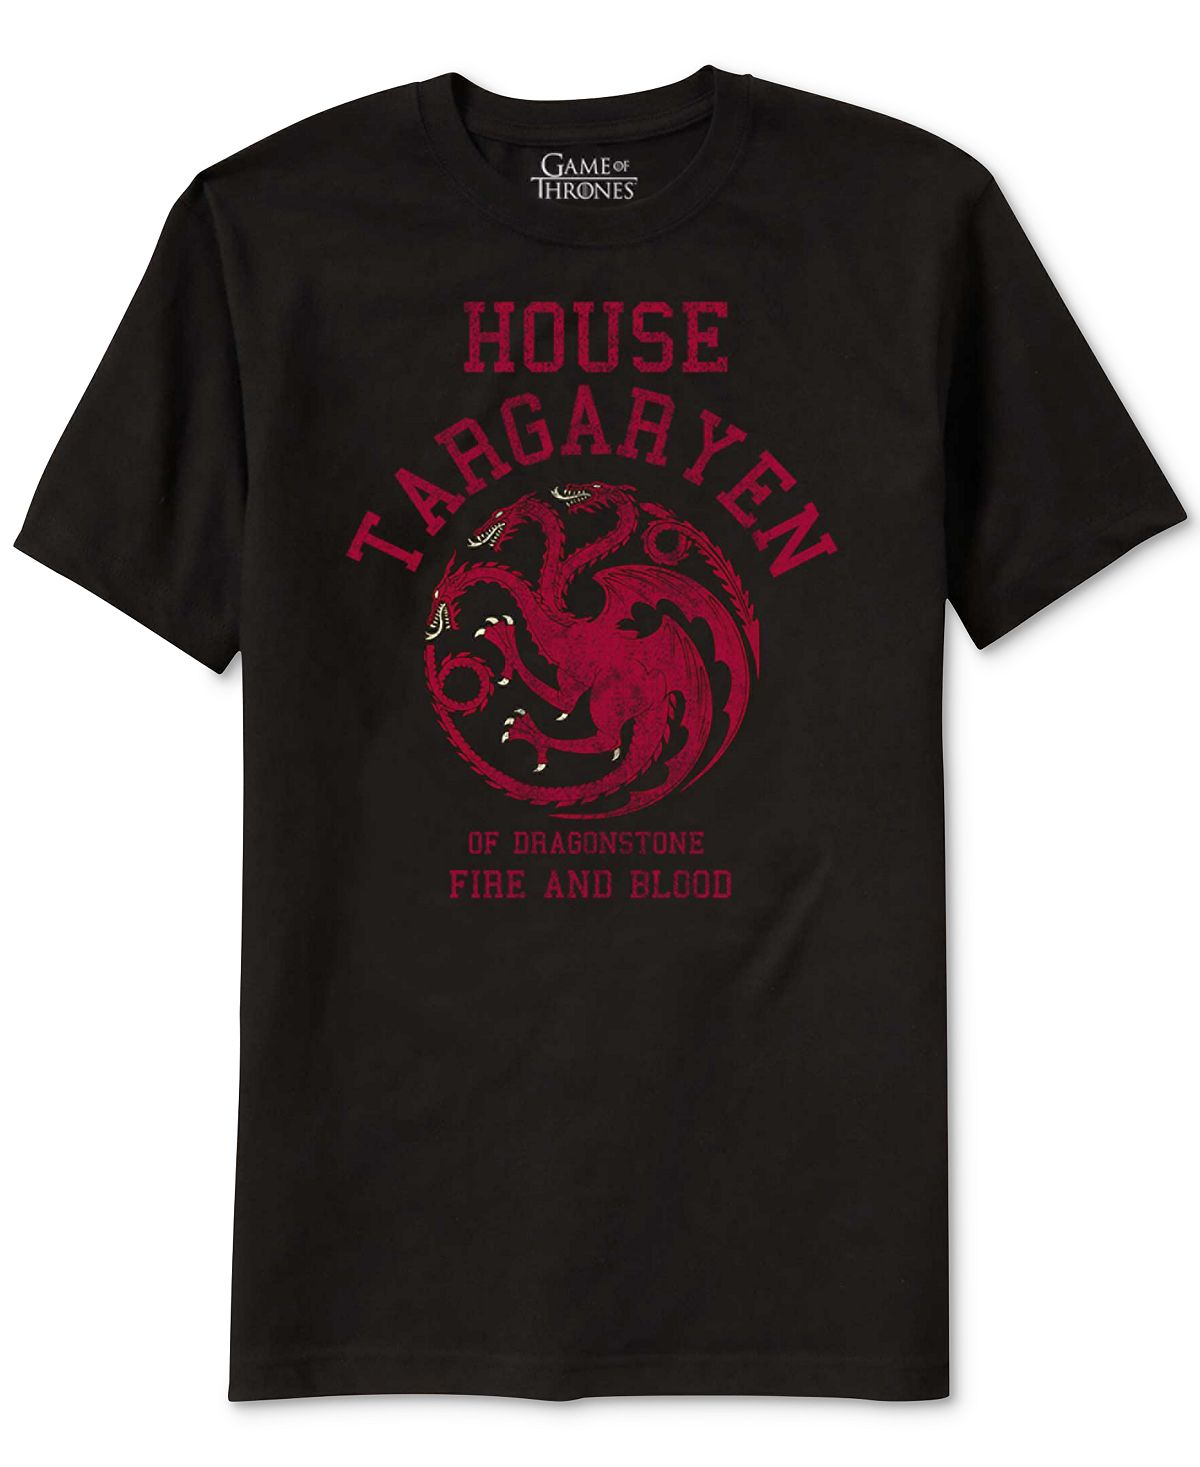 Ripple Junction Game Of Thrones House Targaryen Graphic T-shirt Black